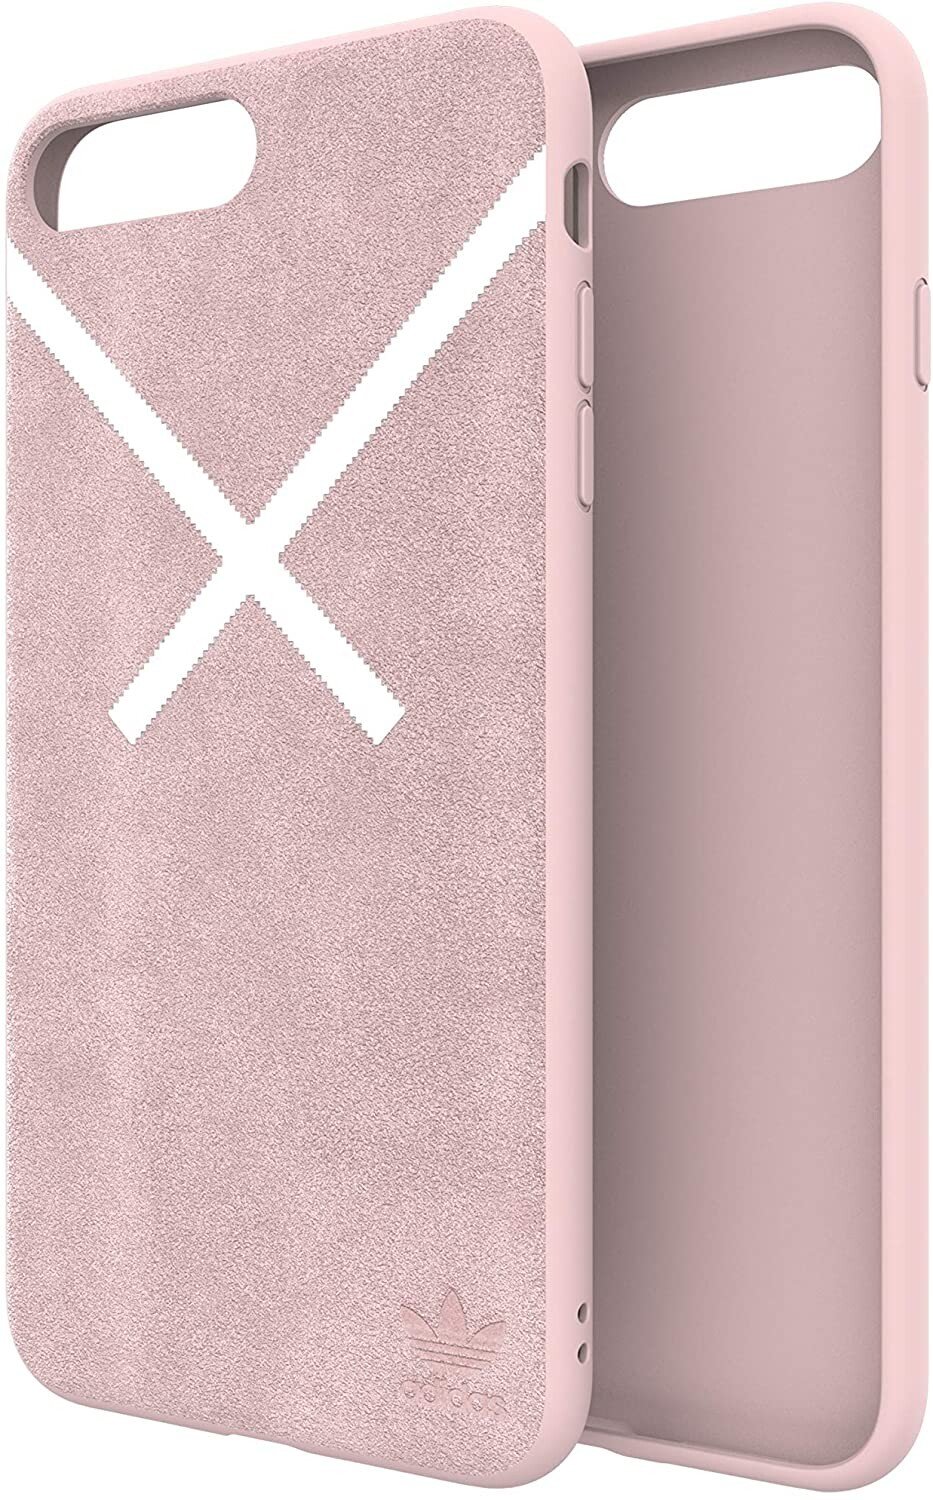 Husa Cover Adidas XBYO pentru iPhone 6/7/8 Plus Pink thumb